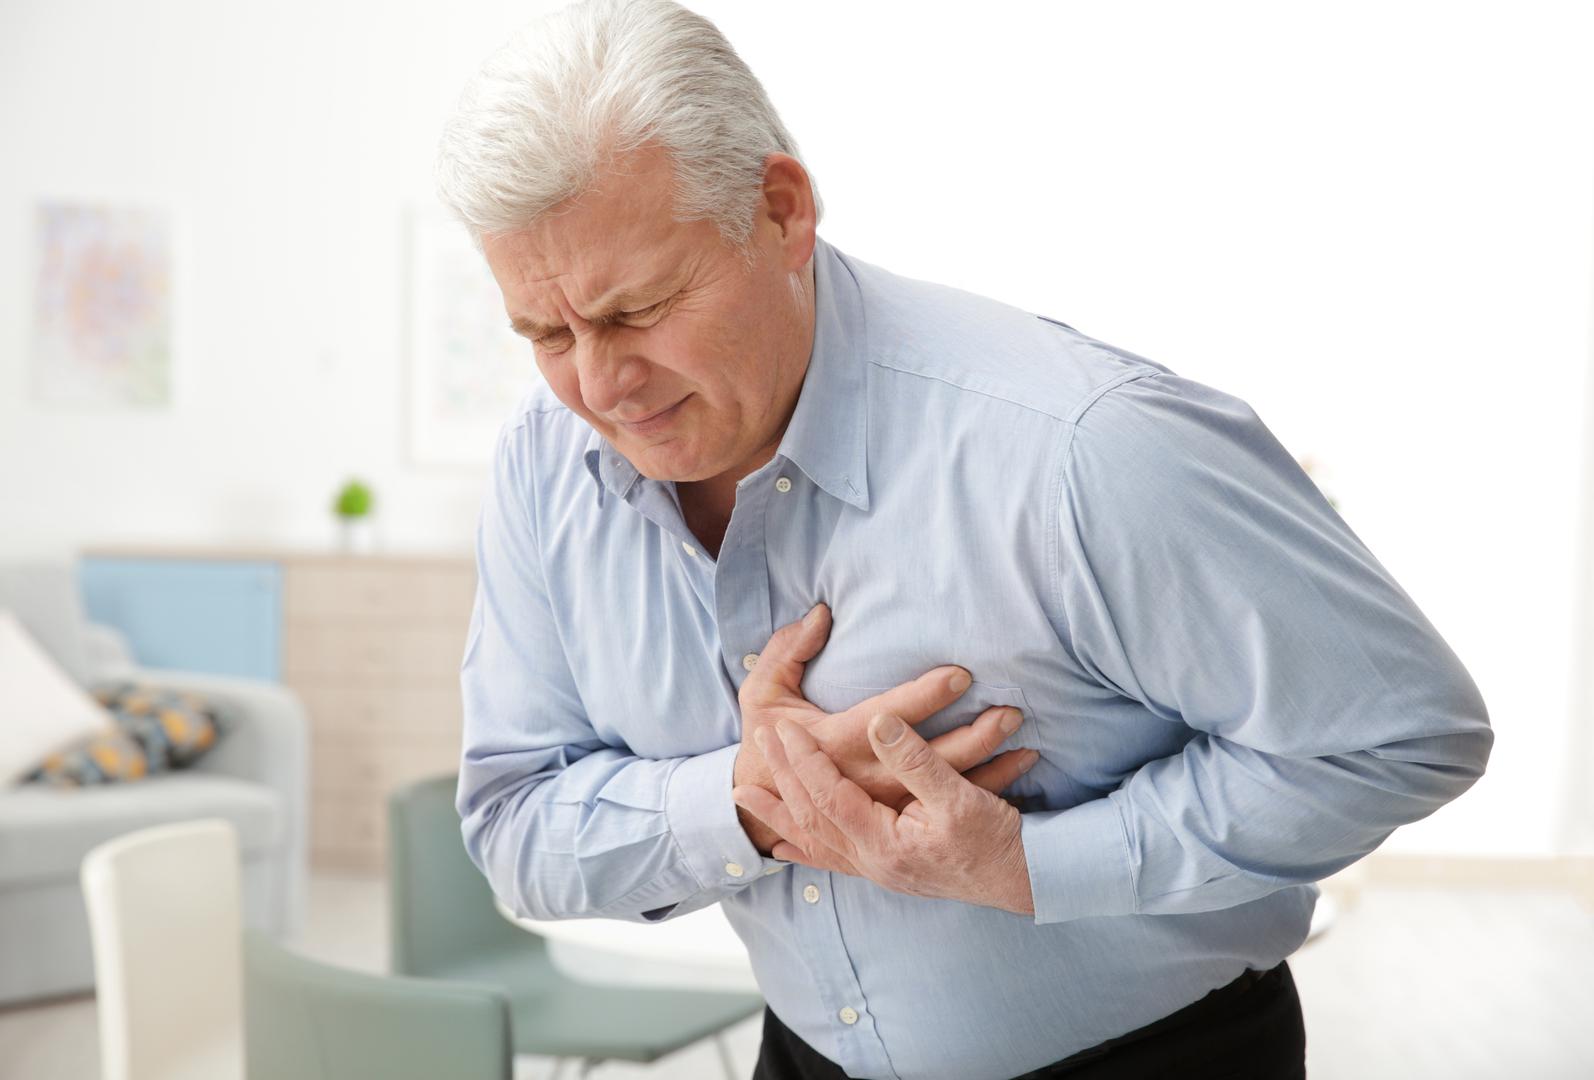 Mučnina – Osjećaj mučnine, slabosti u želucu i povraćanje nisu rijetki kada je u pitanju srčani udar. Živci probavnog sustava usko su povezani sa živcima u srcu zbog neugodu u želudcu.